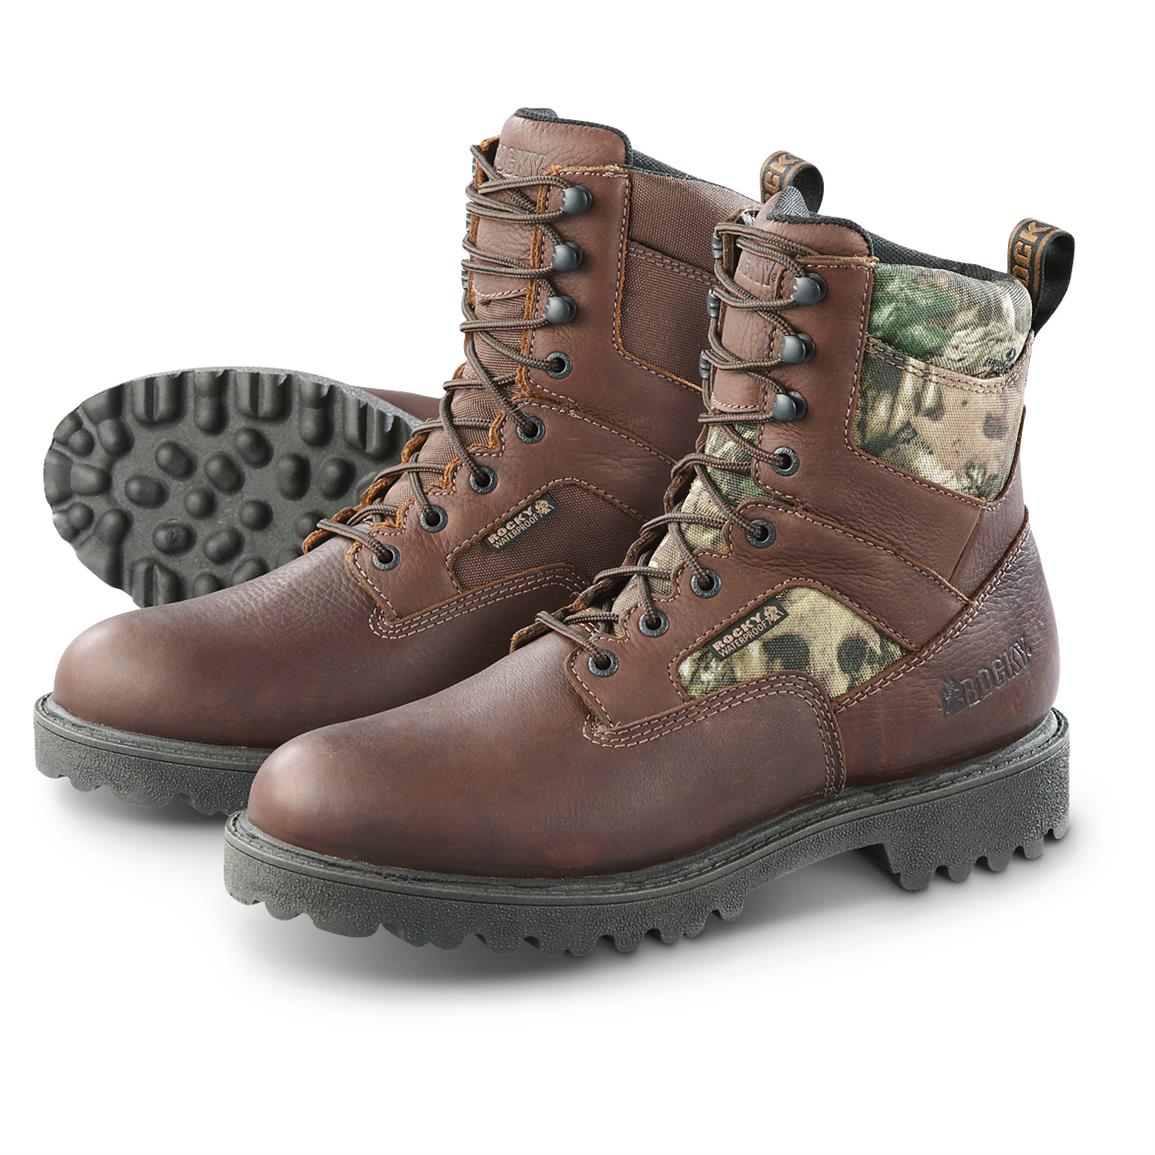 Buy > rocky wildcat boots > in stock